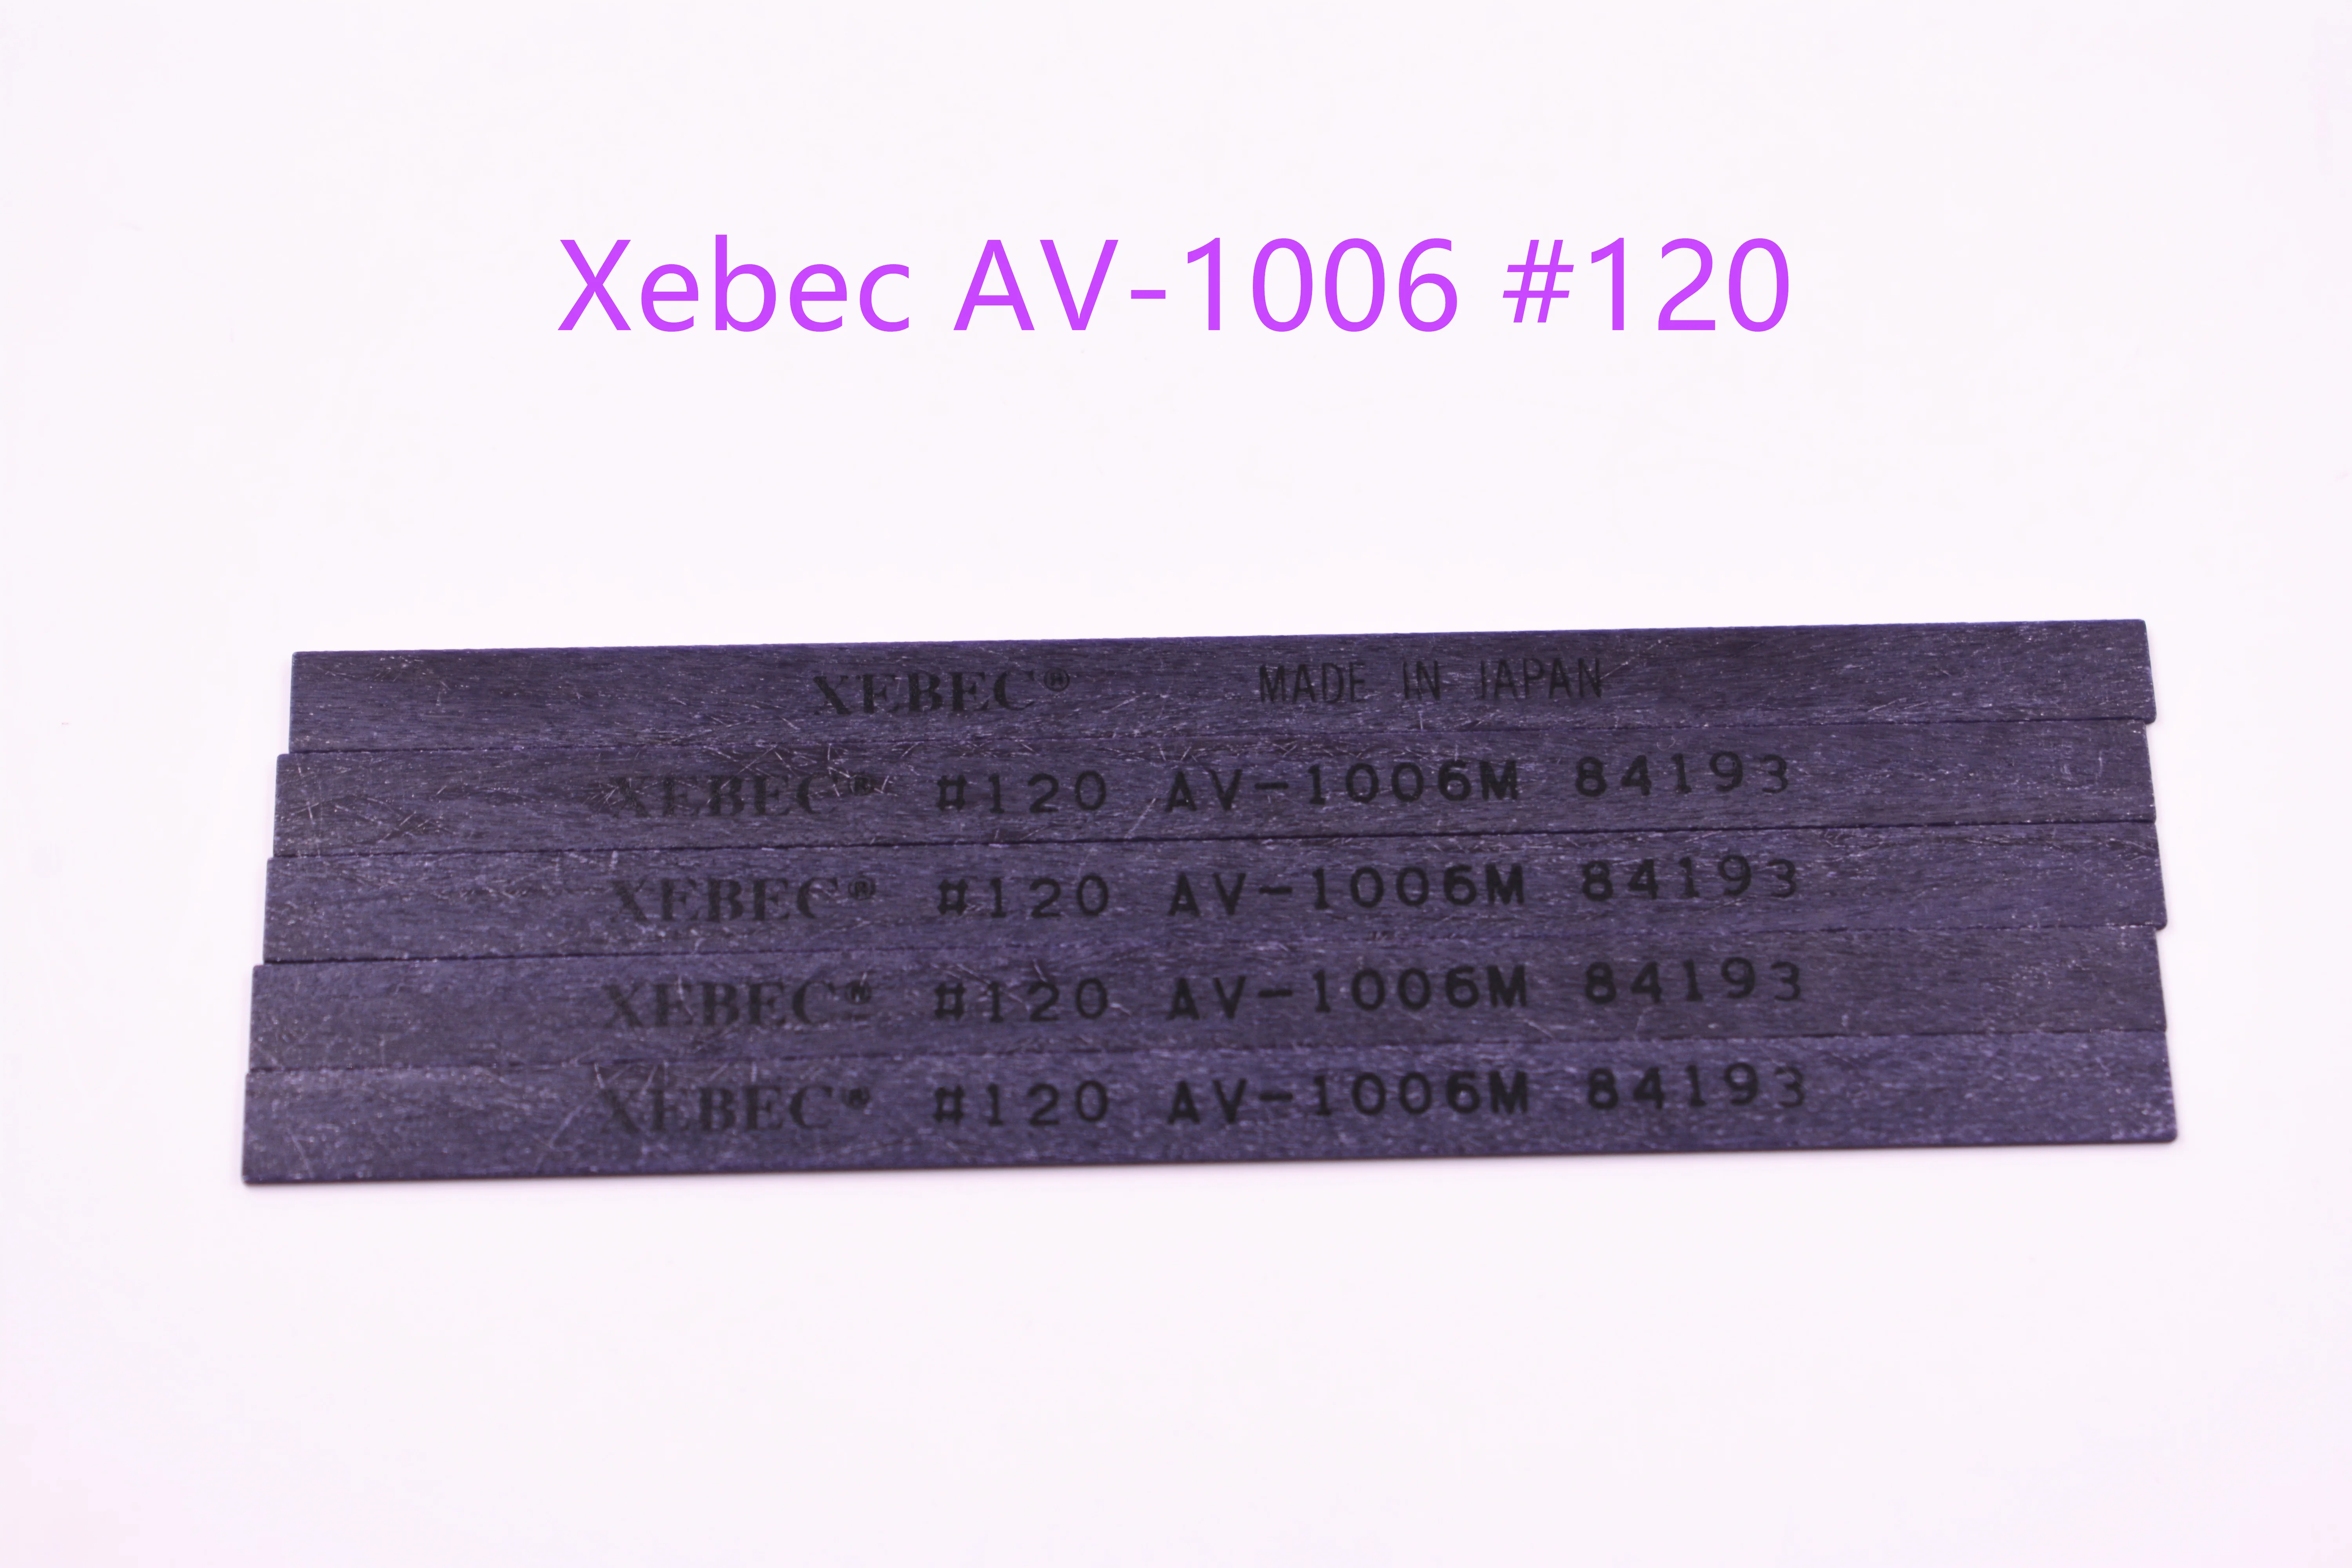 Xebec AV-1006 karedus 120 Keraamilised Kiud Luisud 1tk